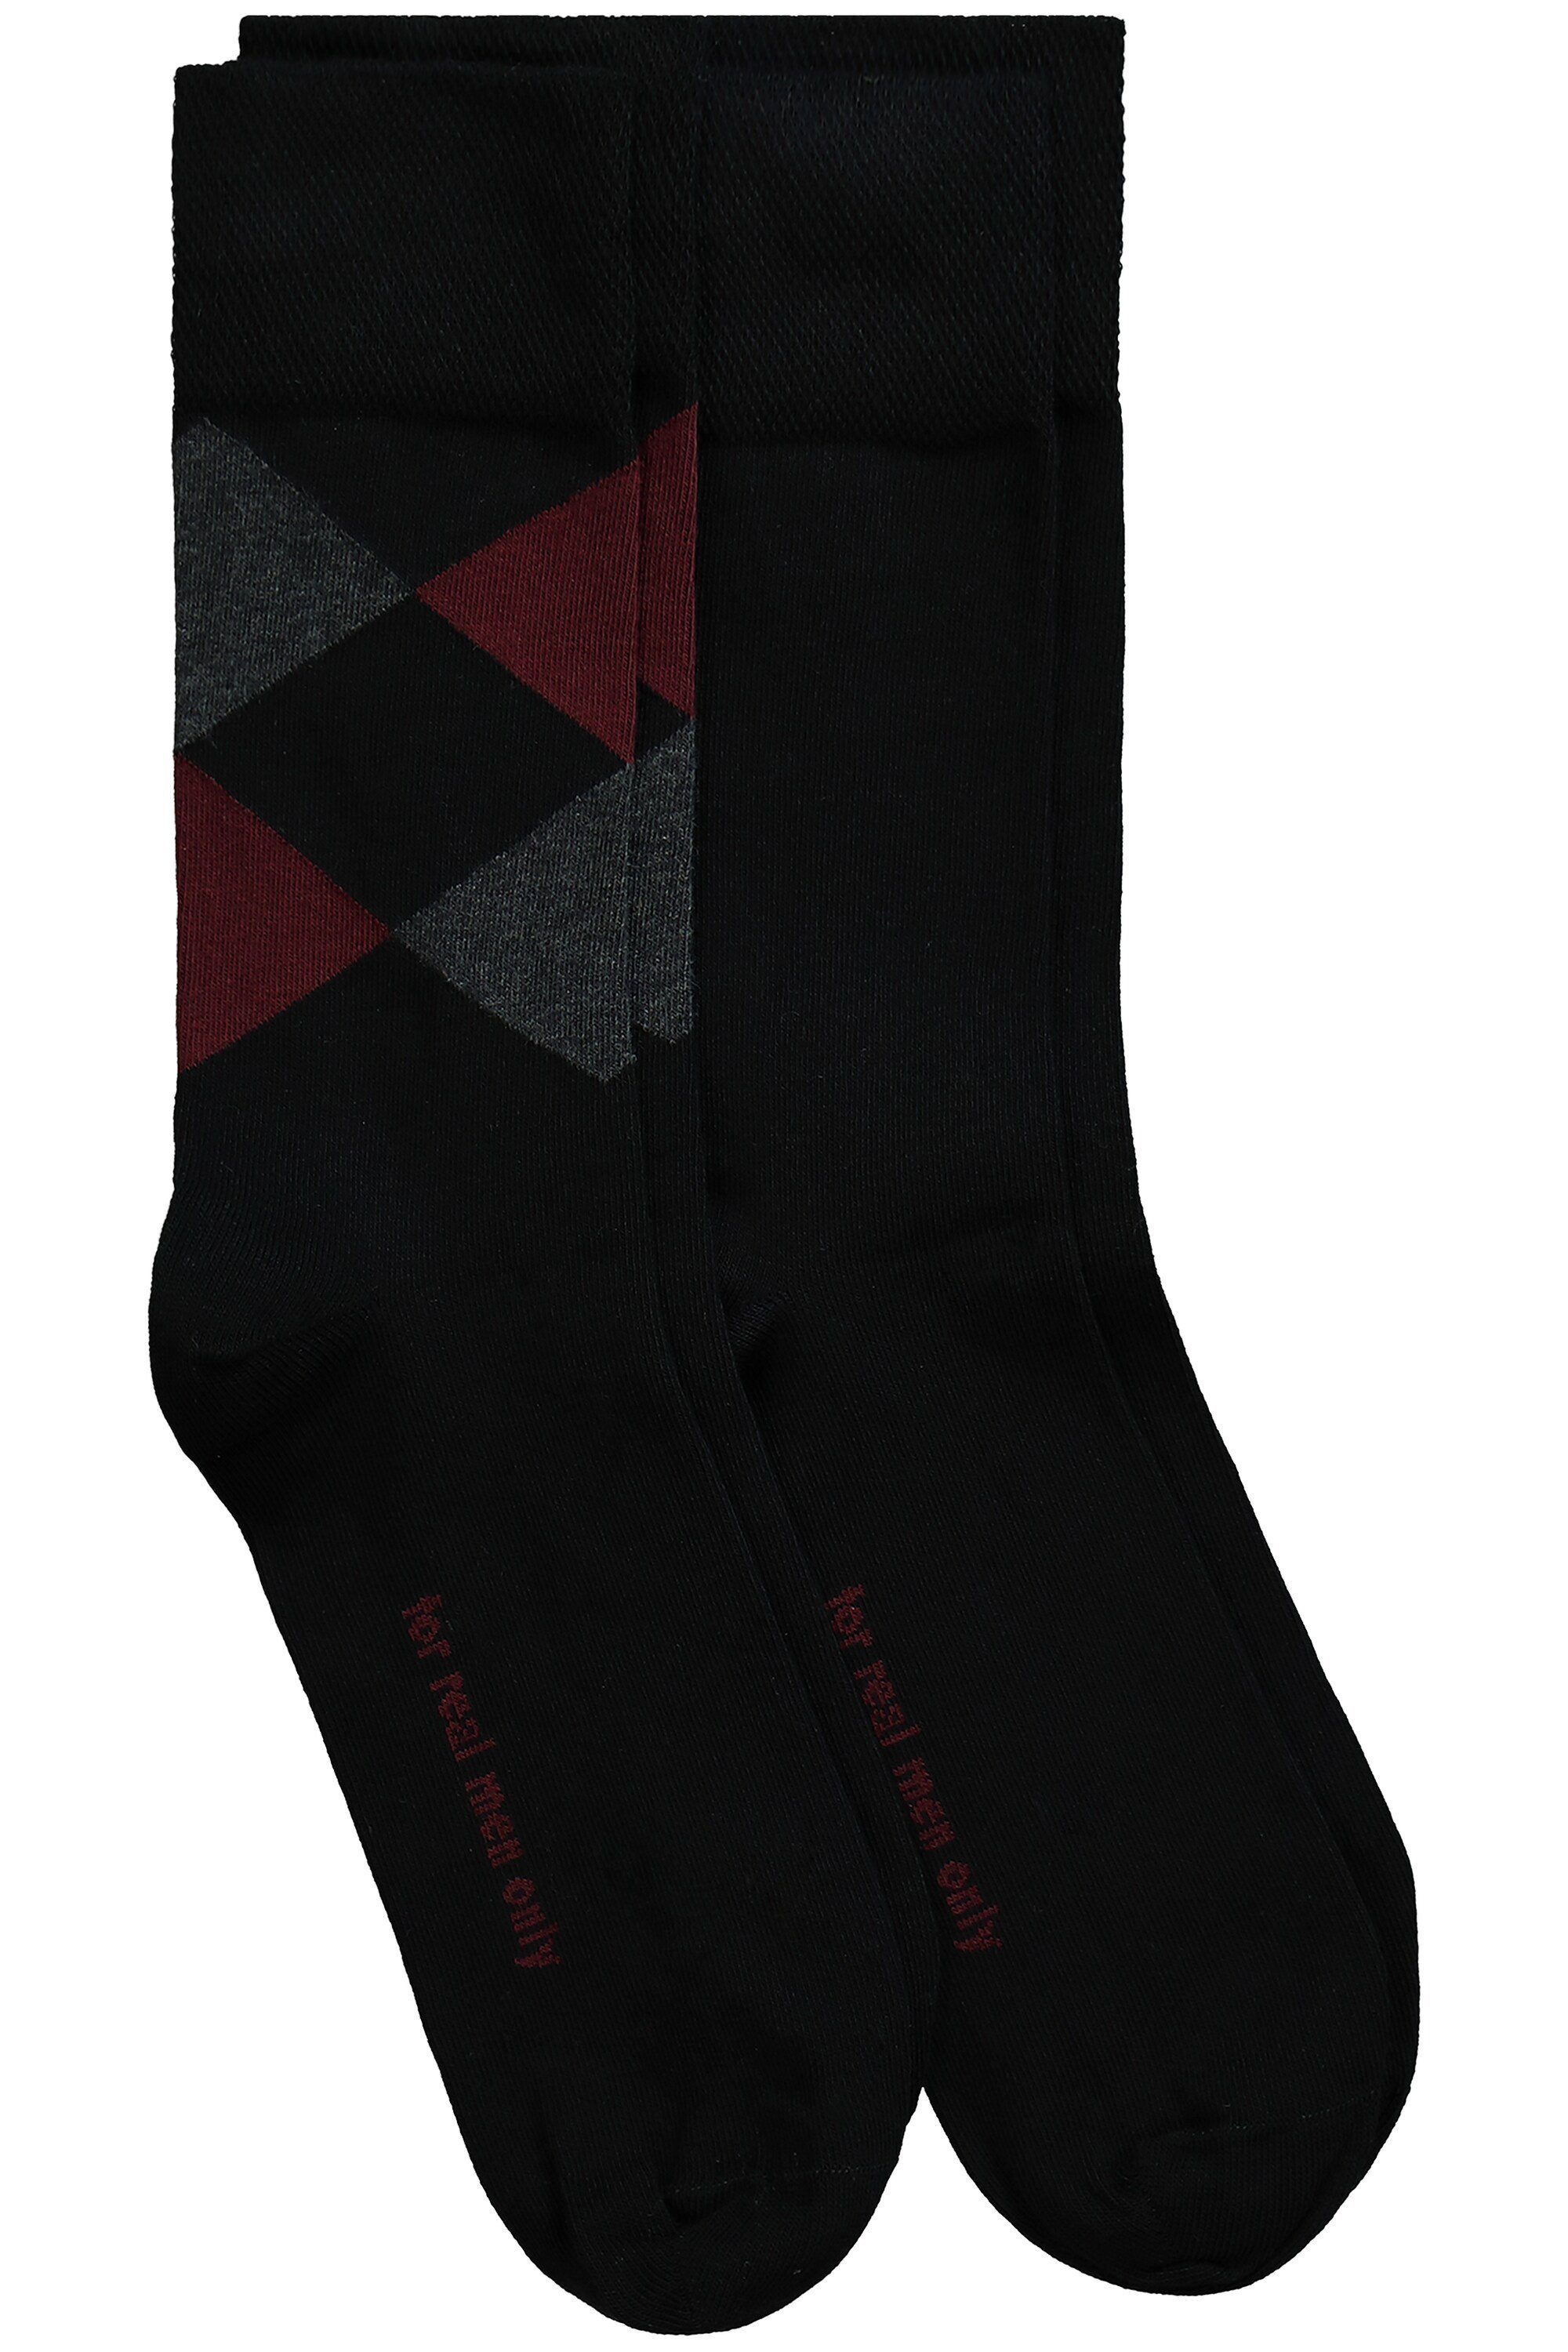 JP1880 Basicsocken Socken 2er-Pack dunkel weinrot Rauten-Muster Komfort-Bündchen (2-Paar)